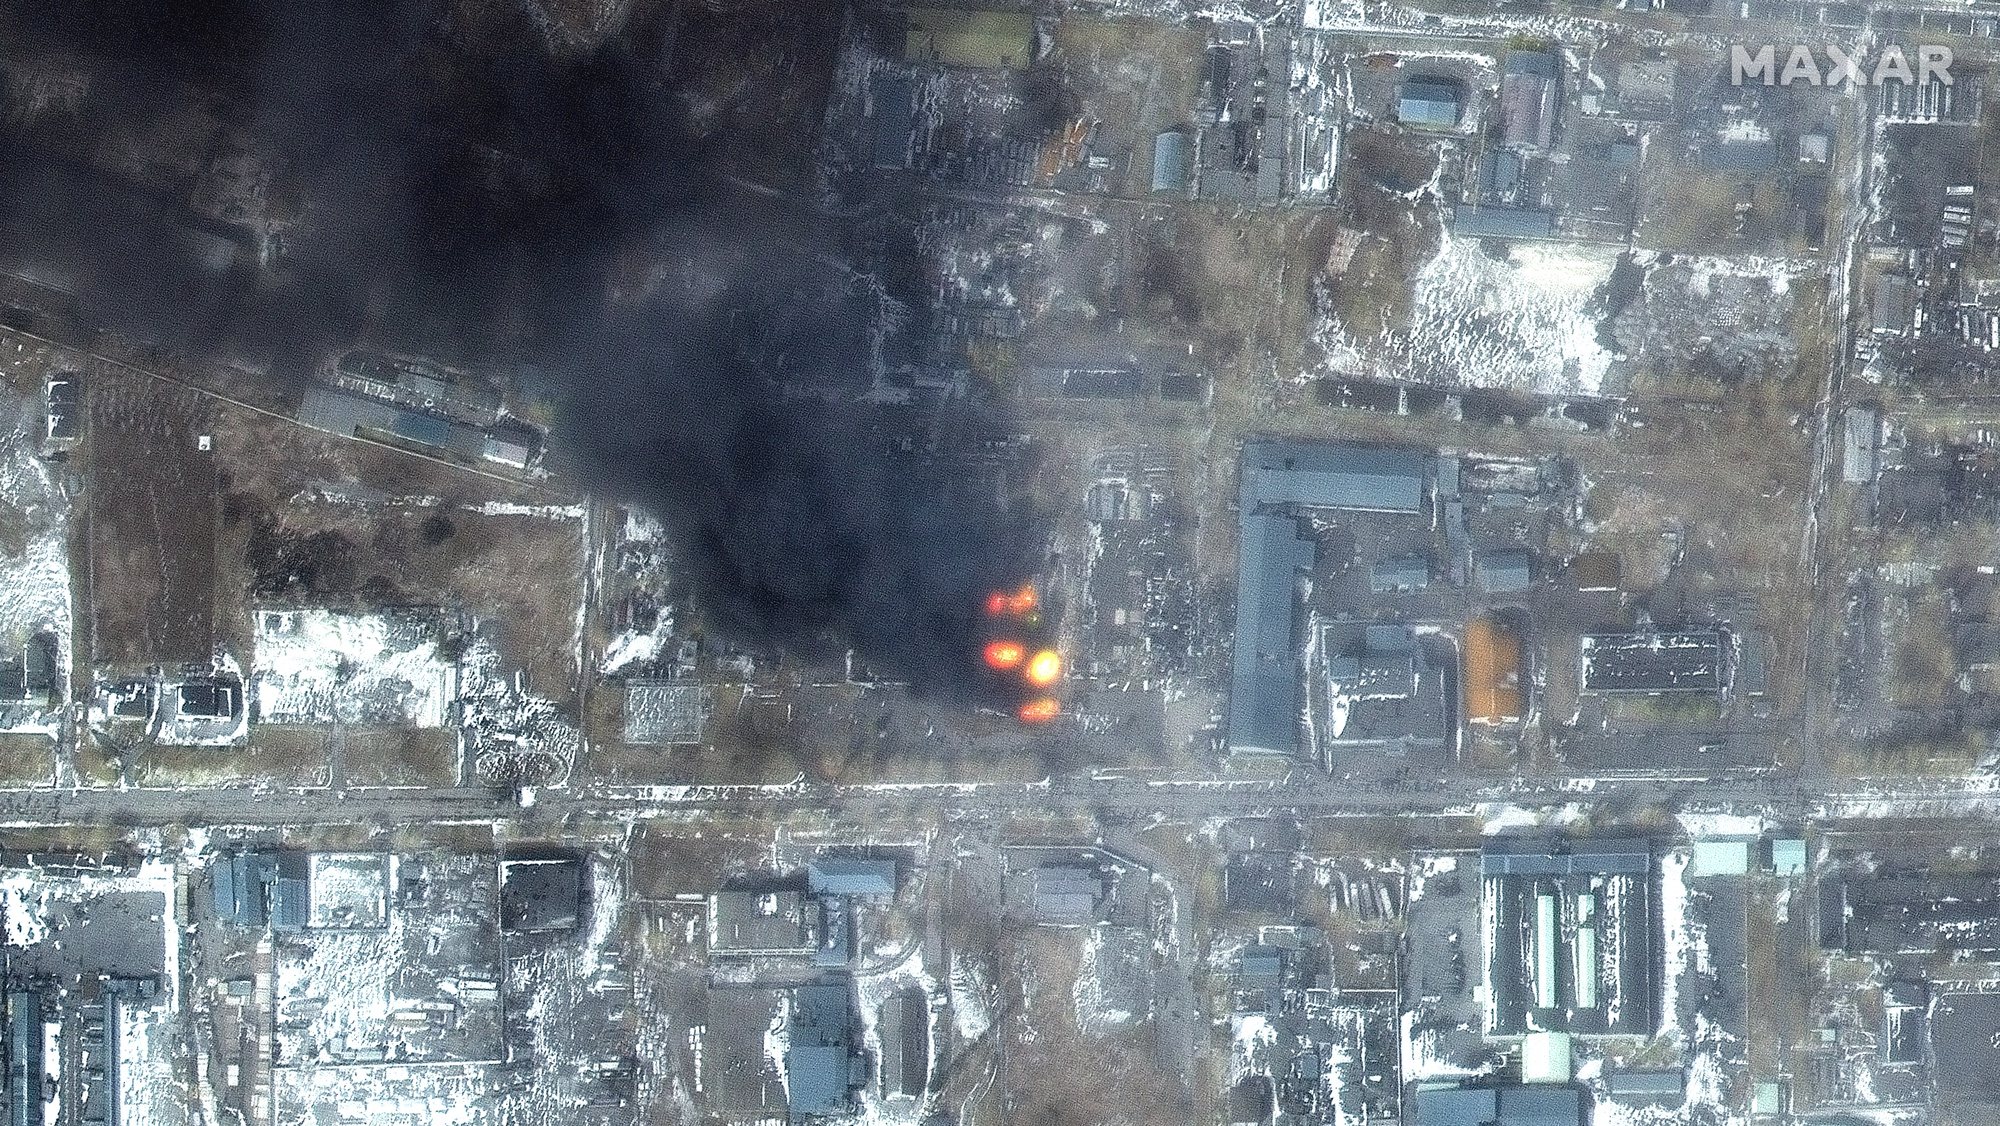 Imagens mostra incêndios na área indústrial do distrito de Mariupol, Ucrânia